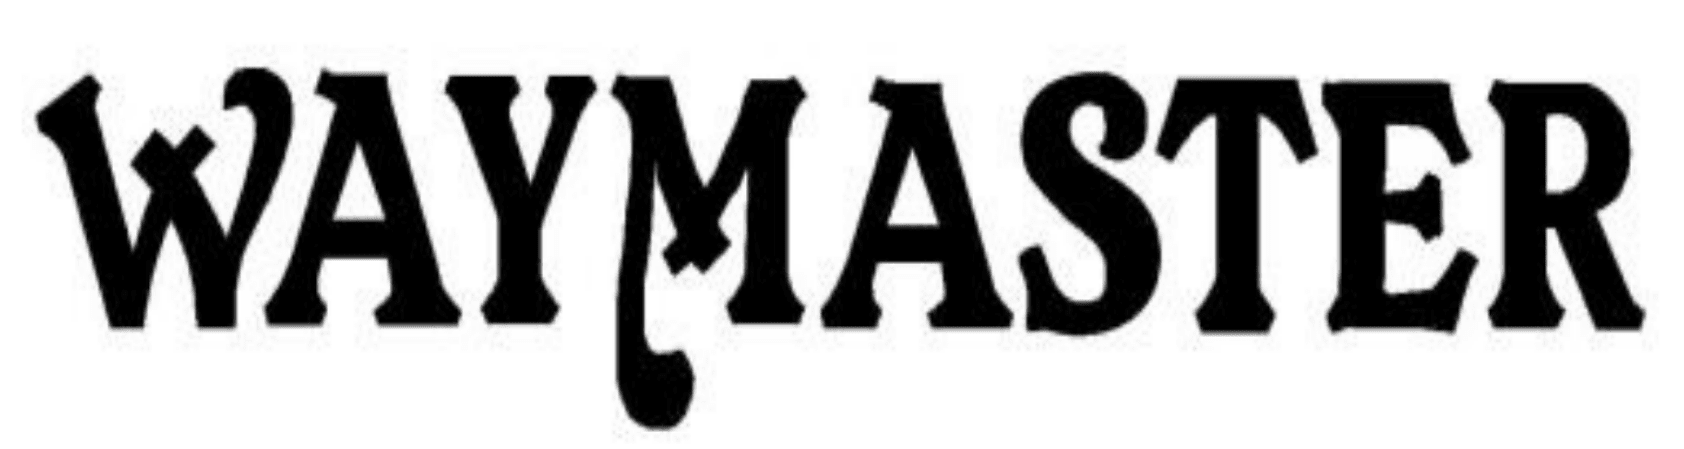 waymaster logo